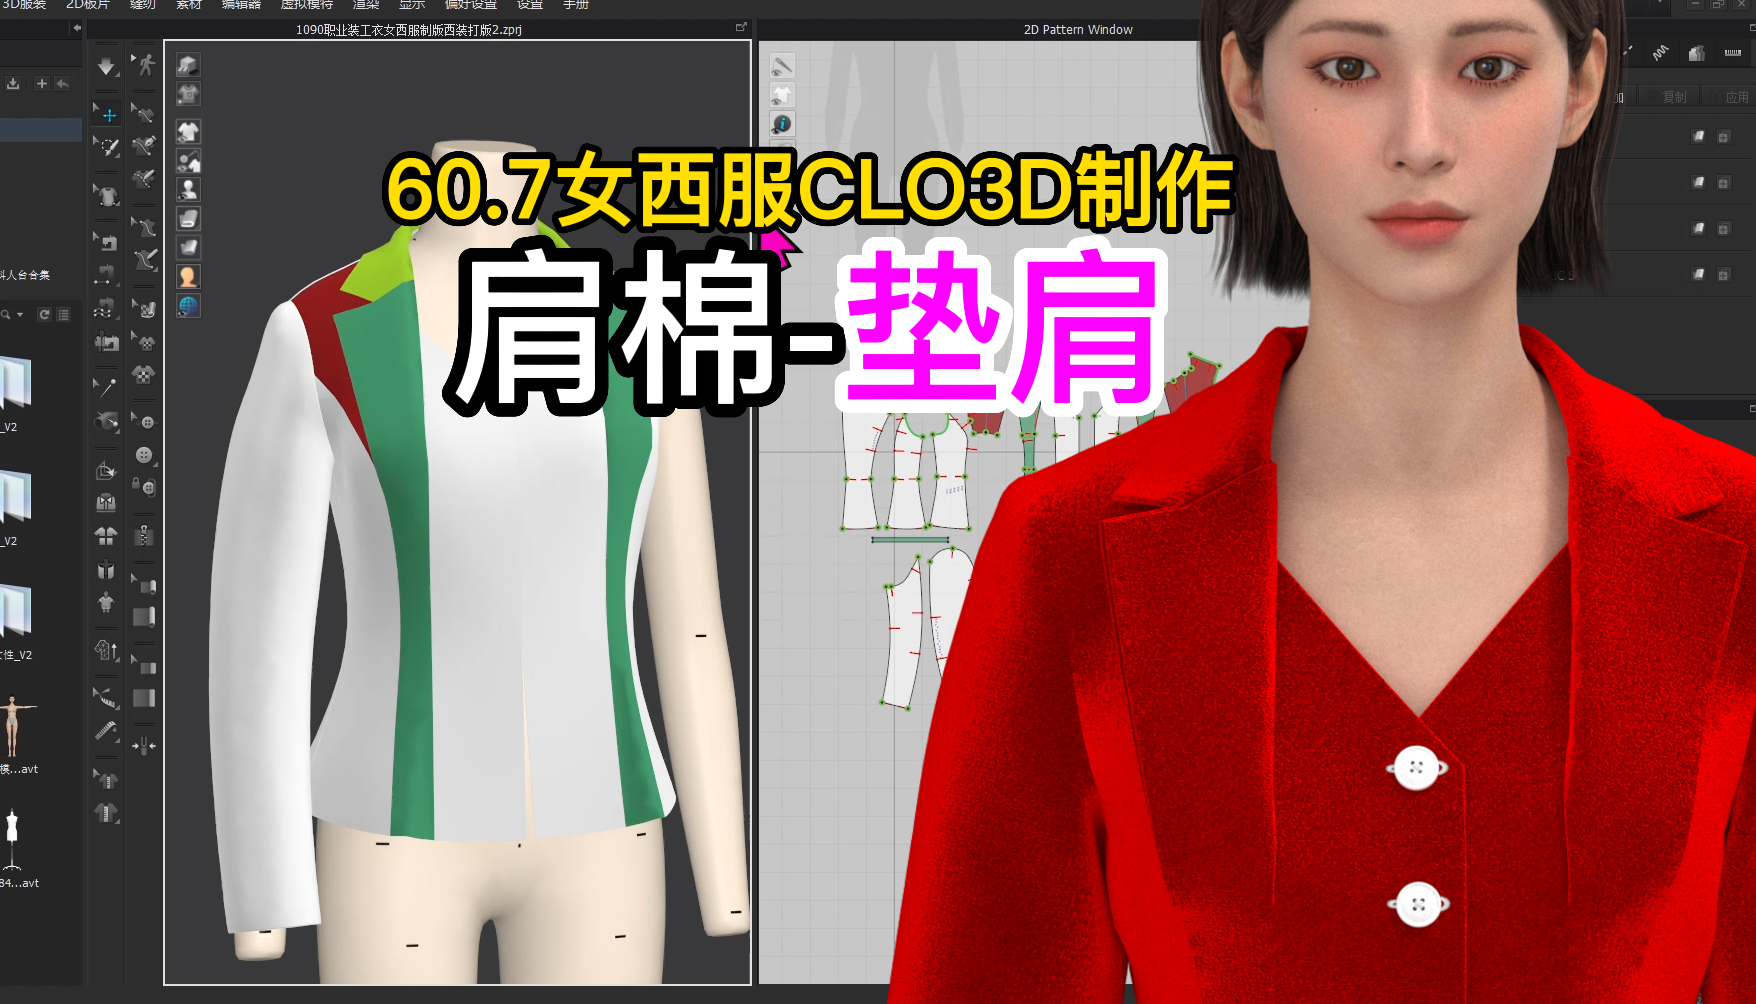 60.7女西服CLO3D制作-肩棉-垫肩.png